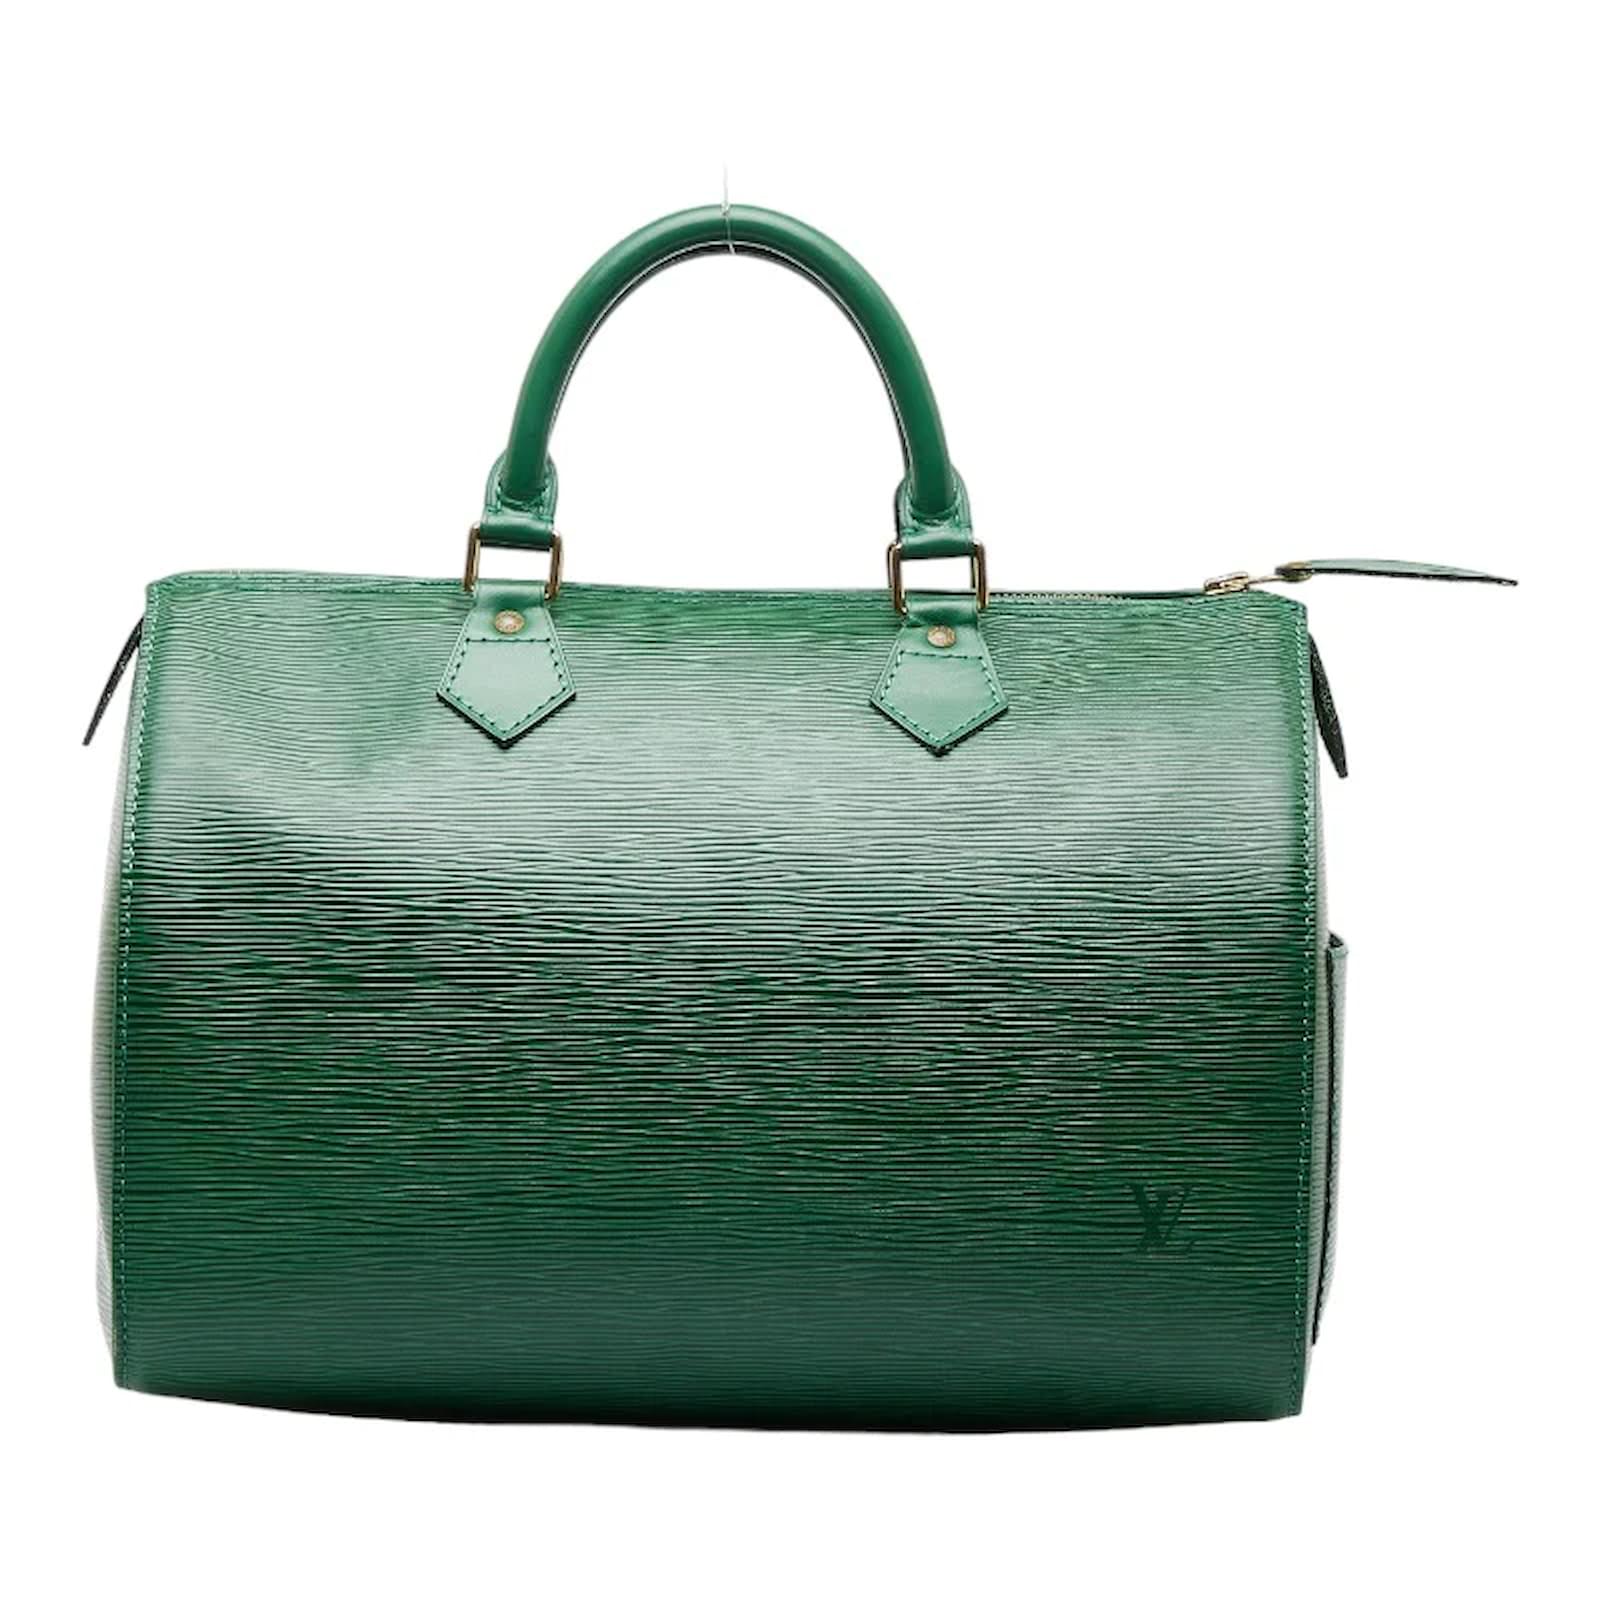 Louis Vuitton Epi Speedy 30 M43004 Green Leather Pony-style